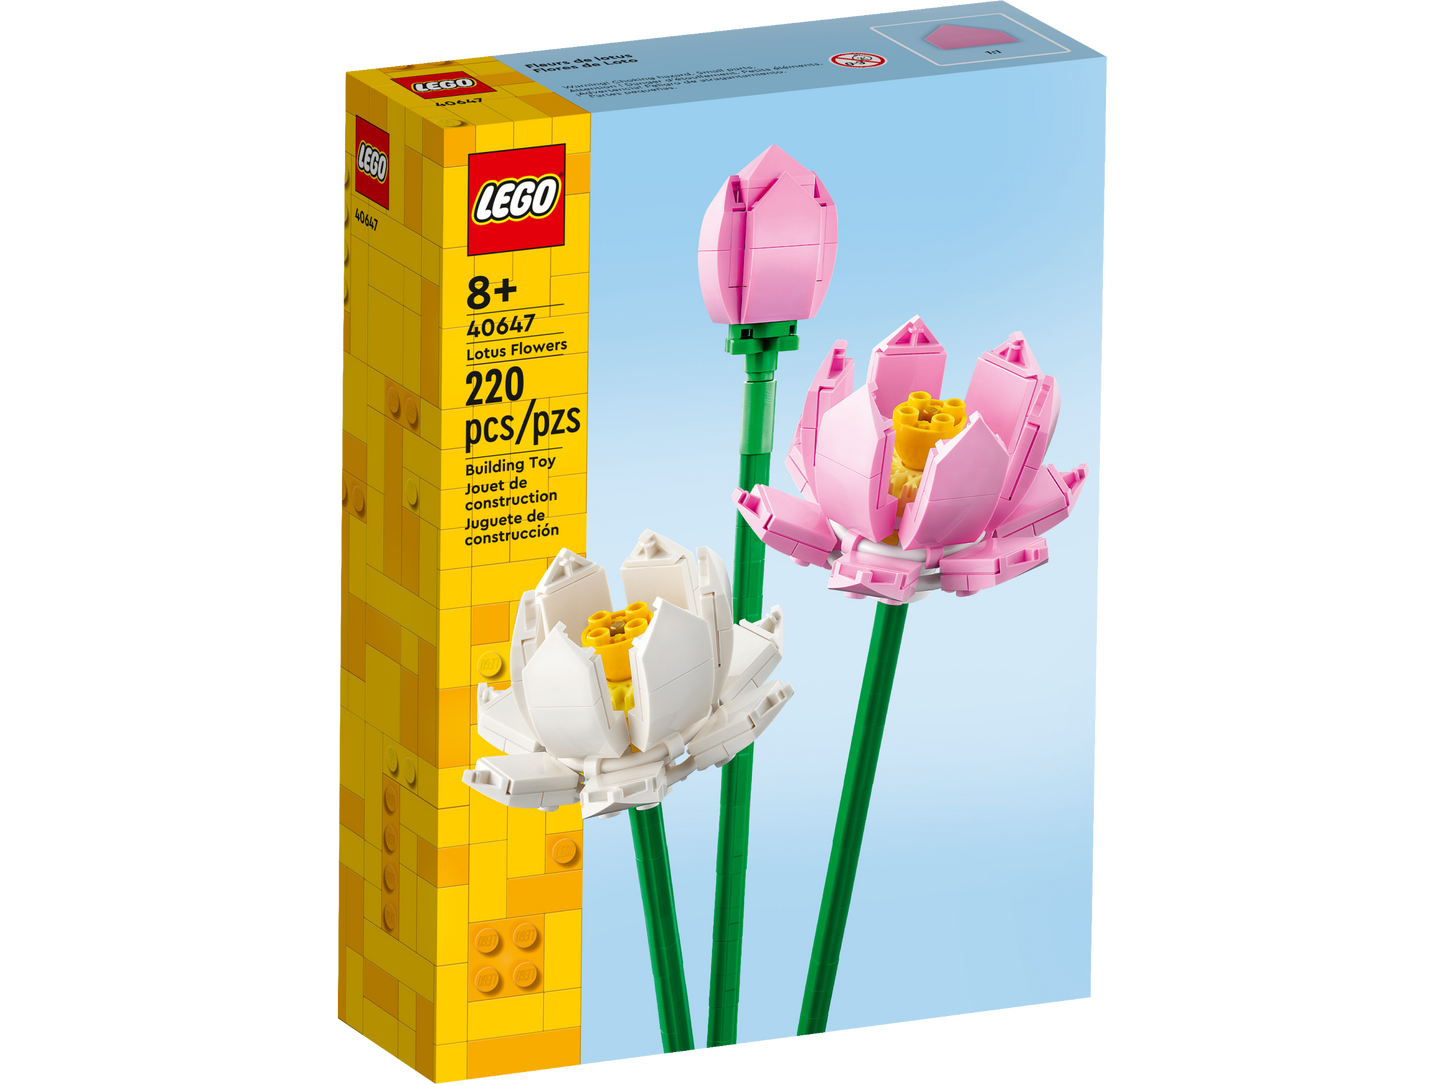 LEGO BOTANICALS - Lotus Flowers 40647